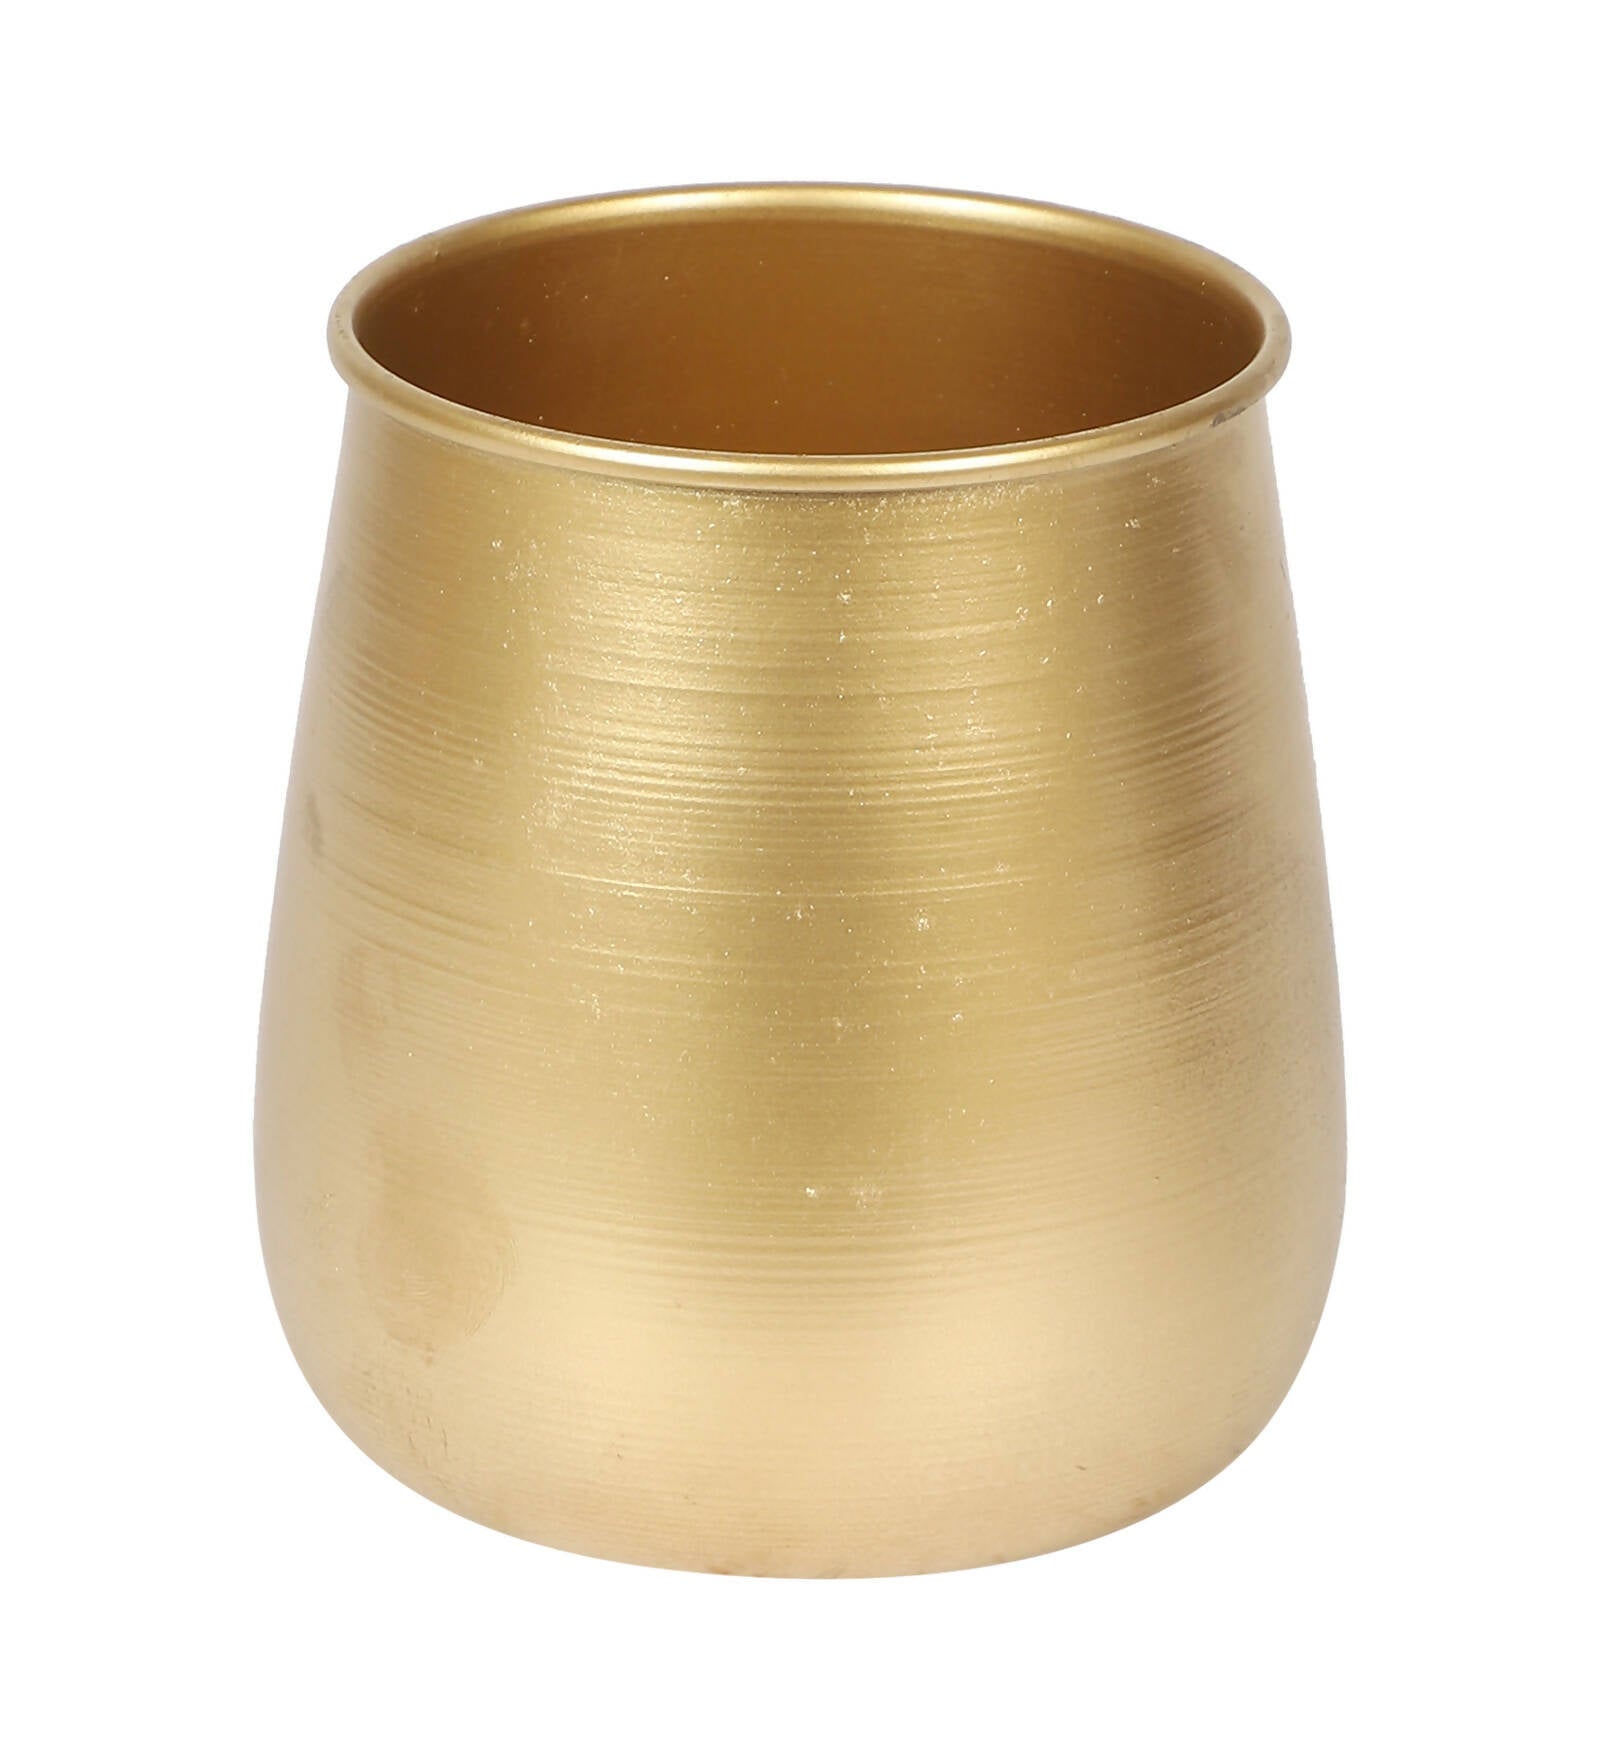 Gold Flower Pot & Wax Jar Combo Set of 3